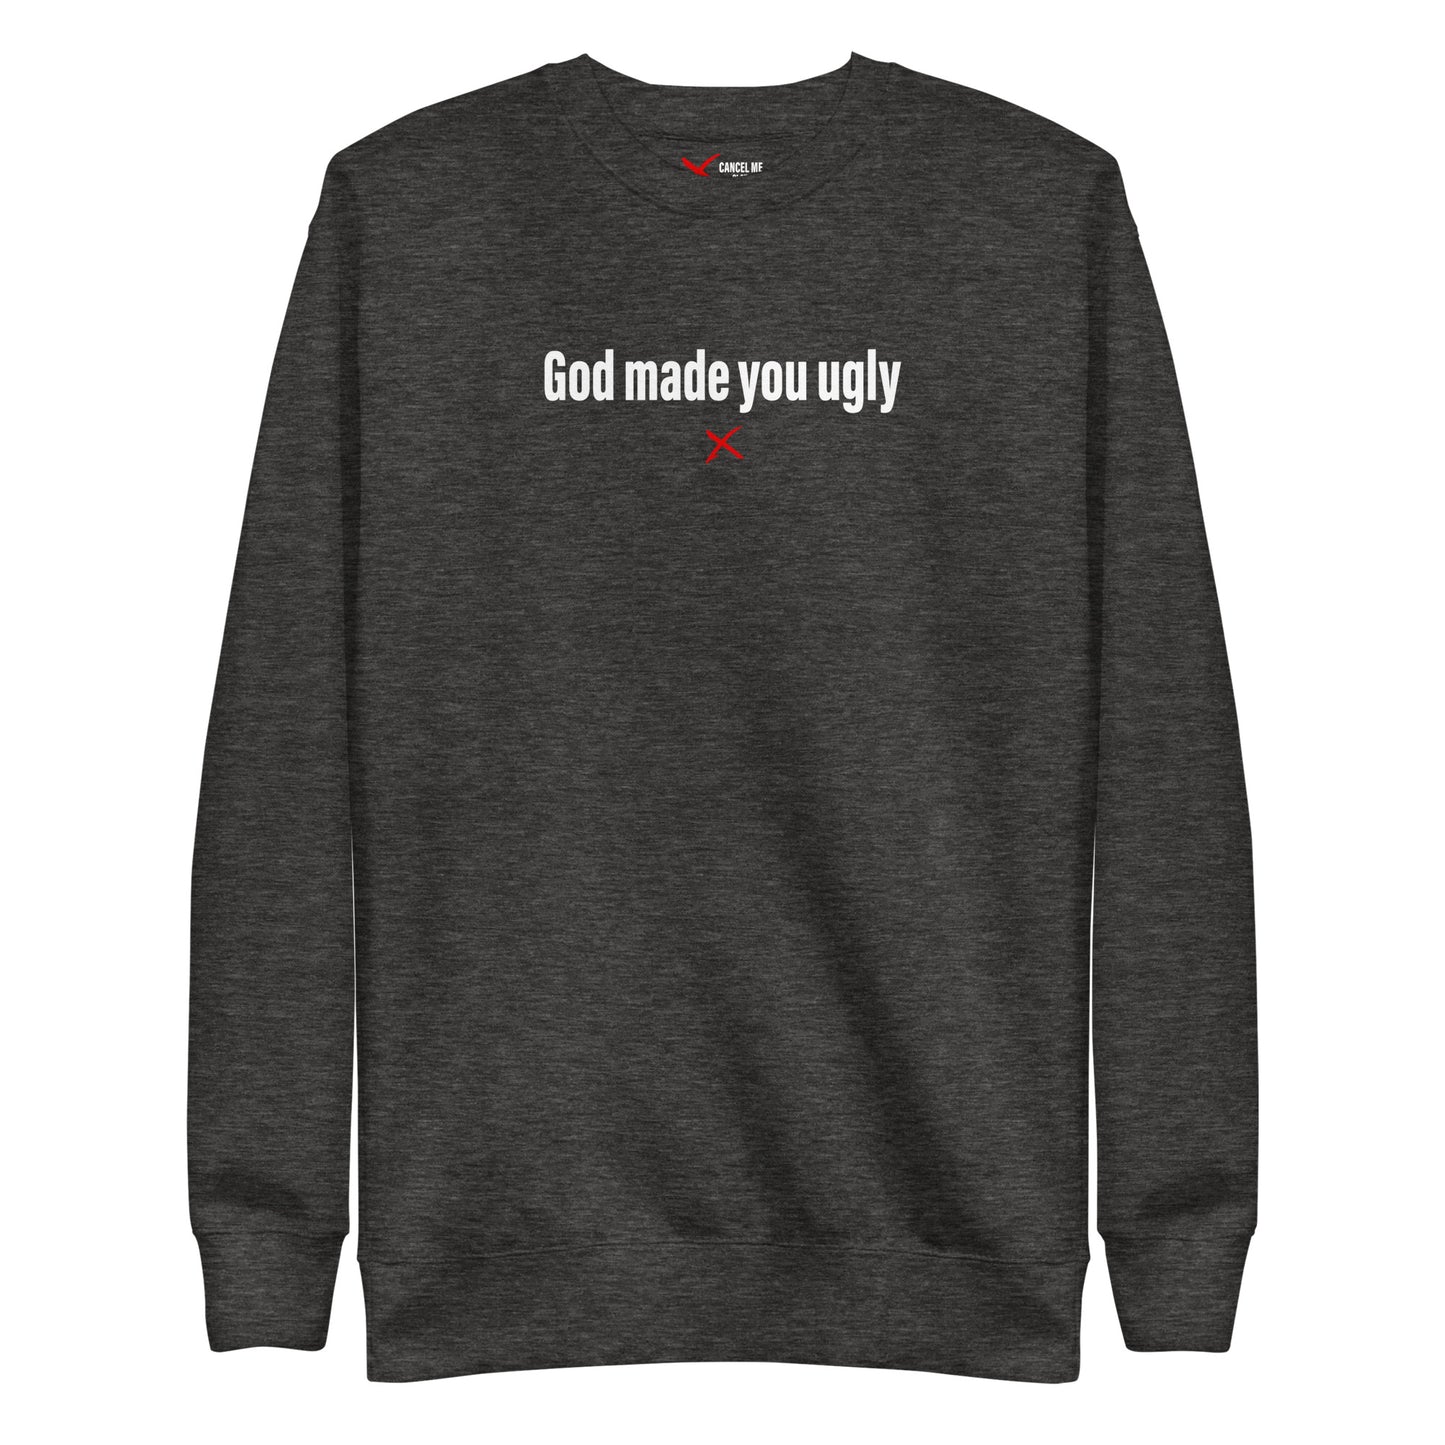 God made you ugly - Sweatshirt